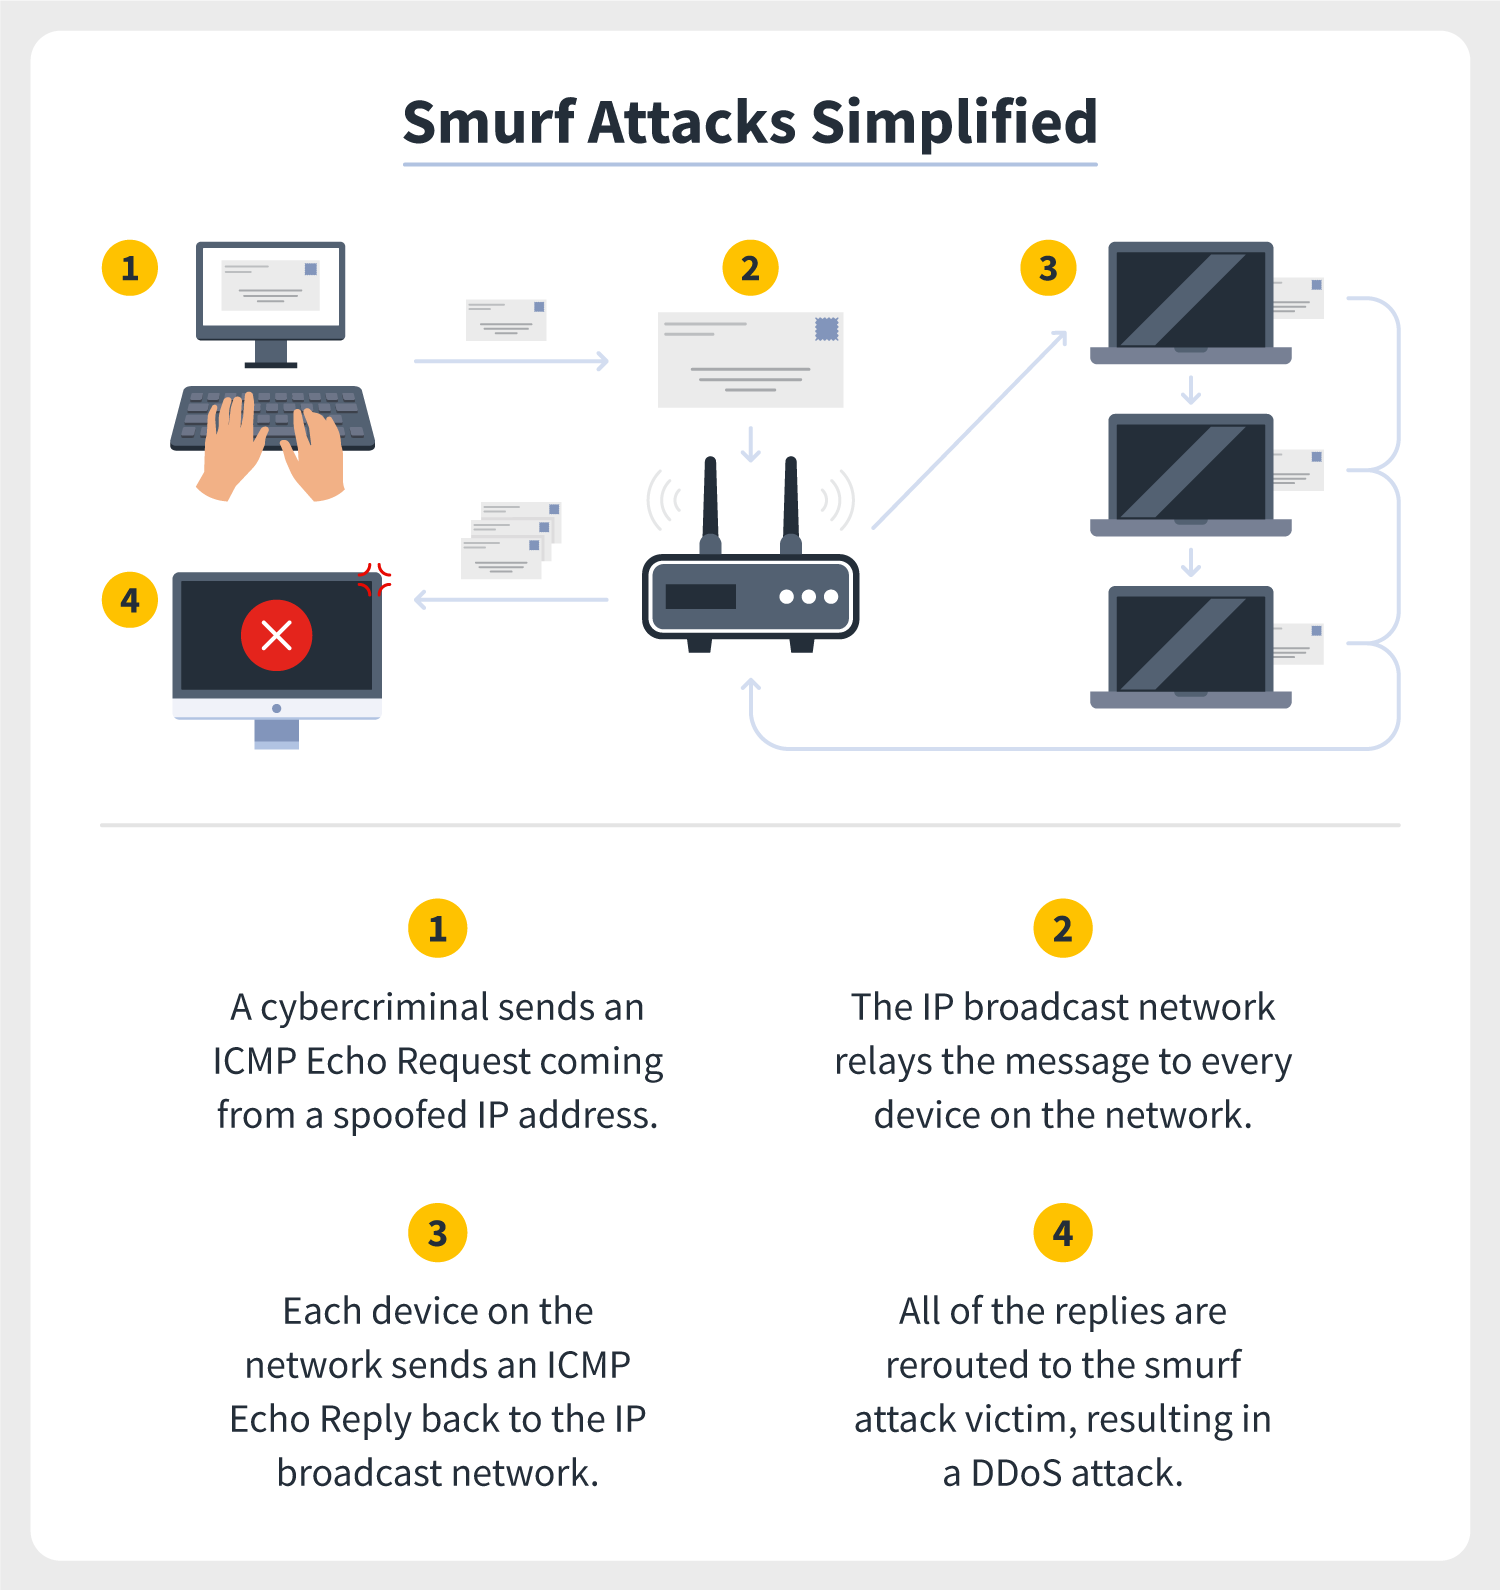 Smruf attacks simplified